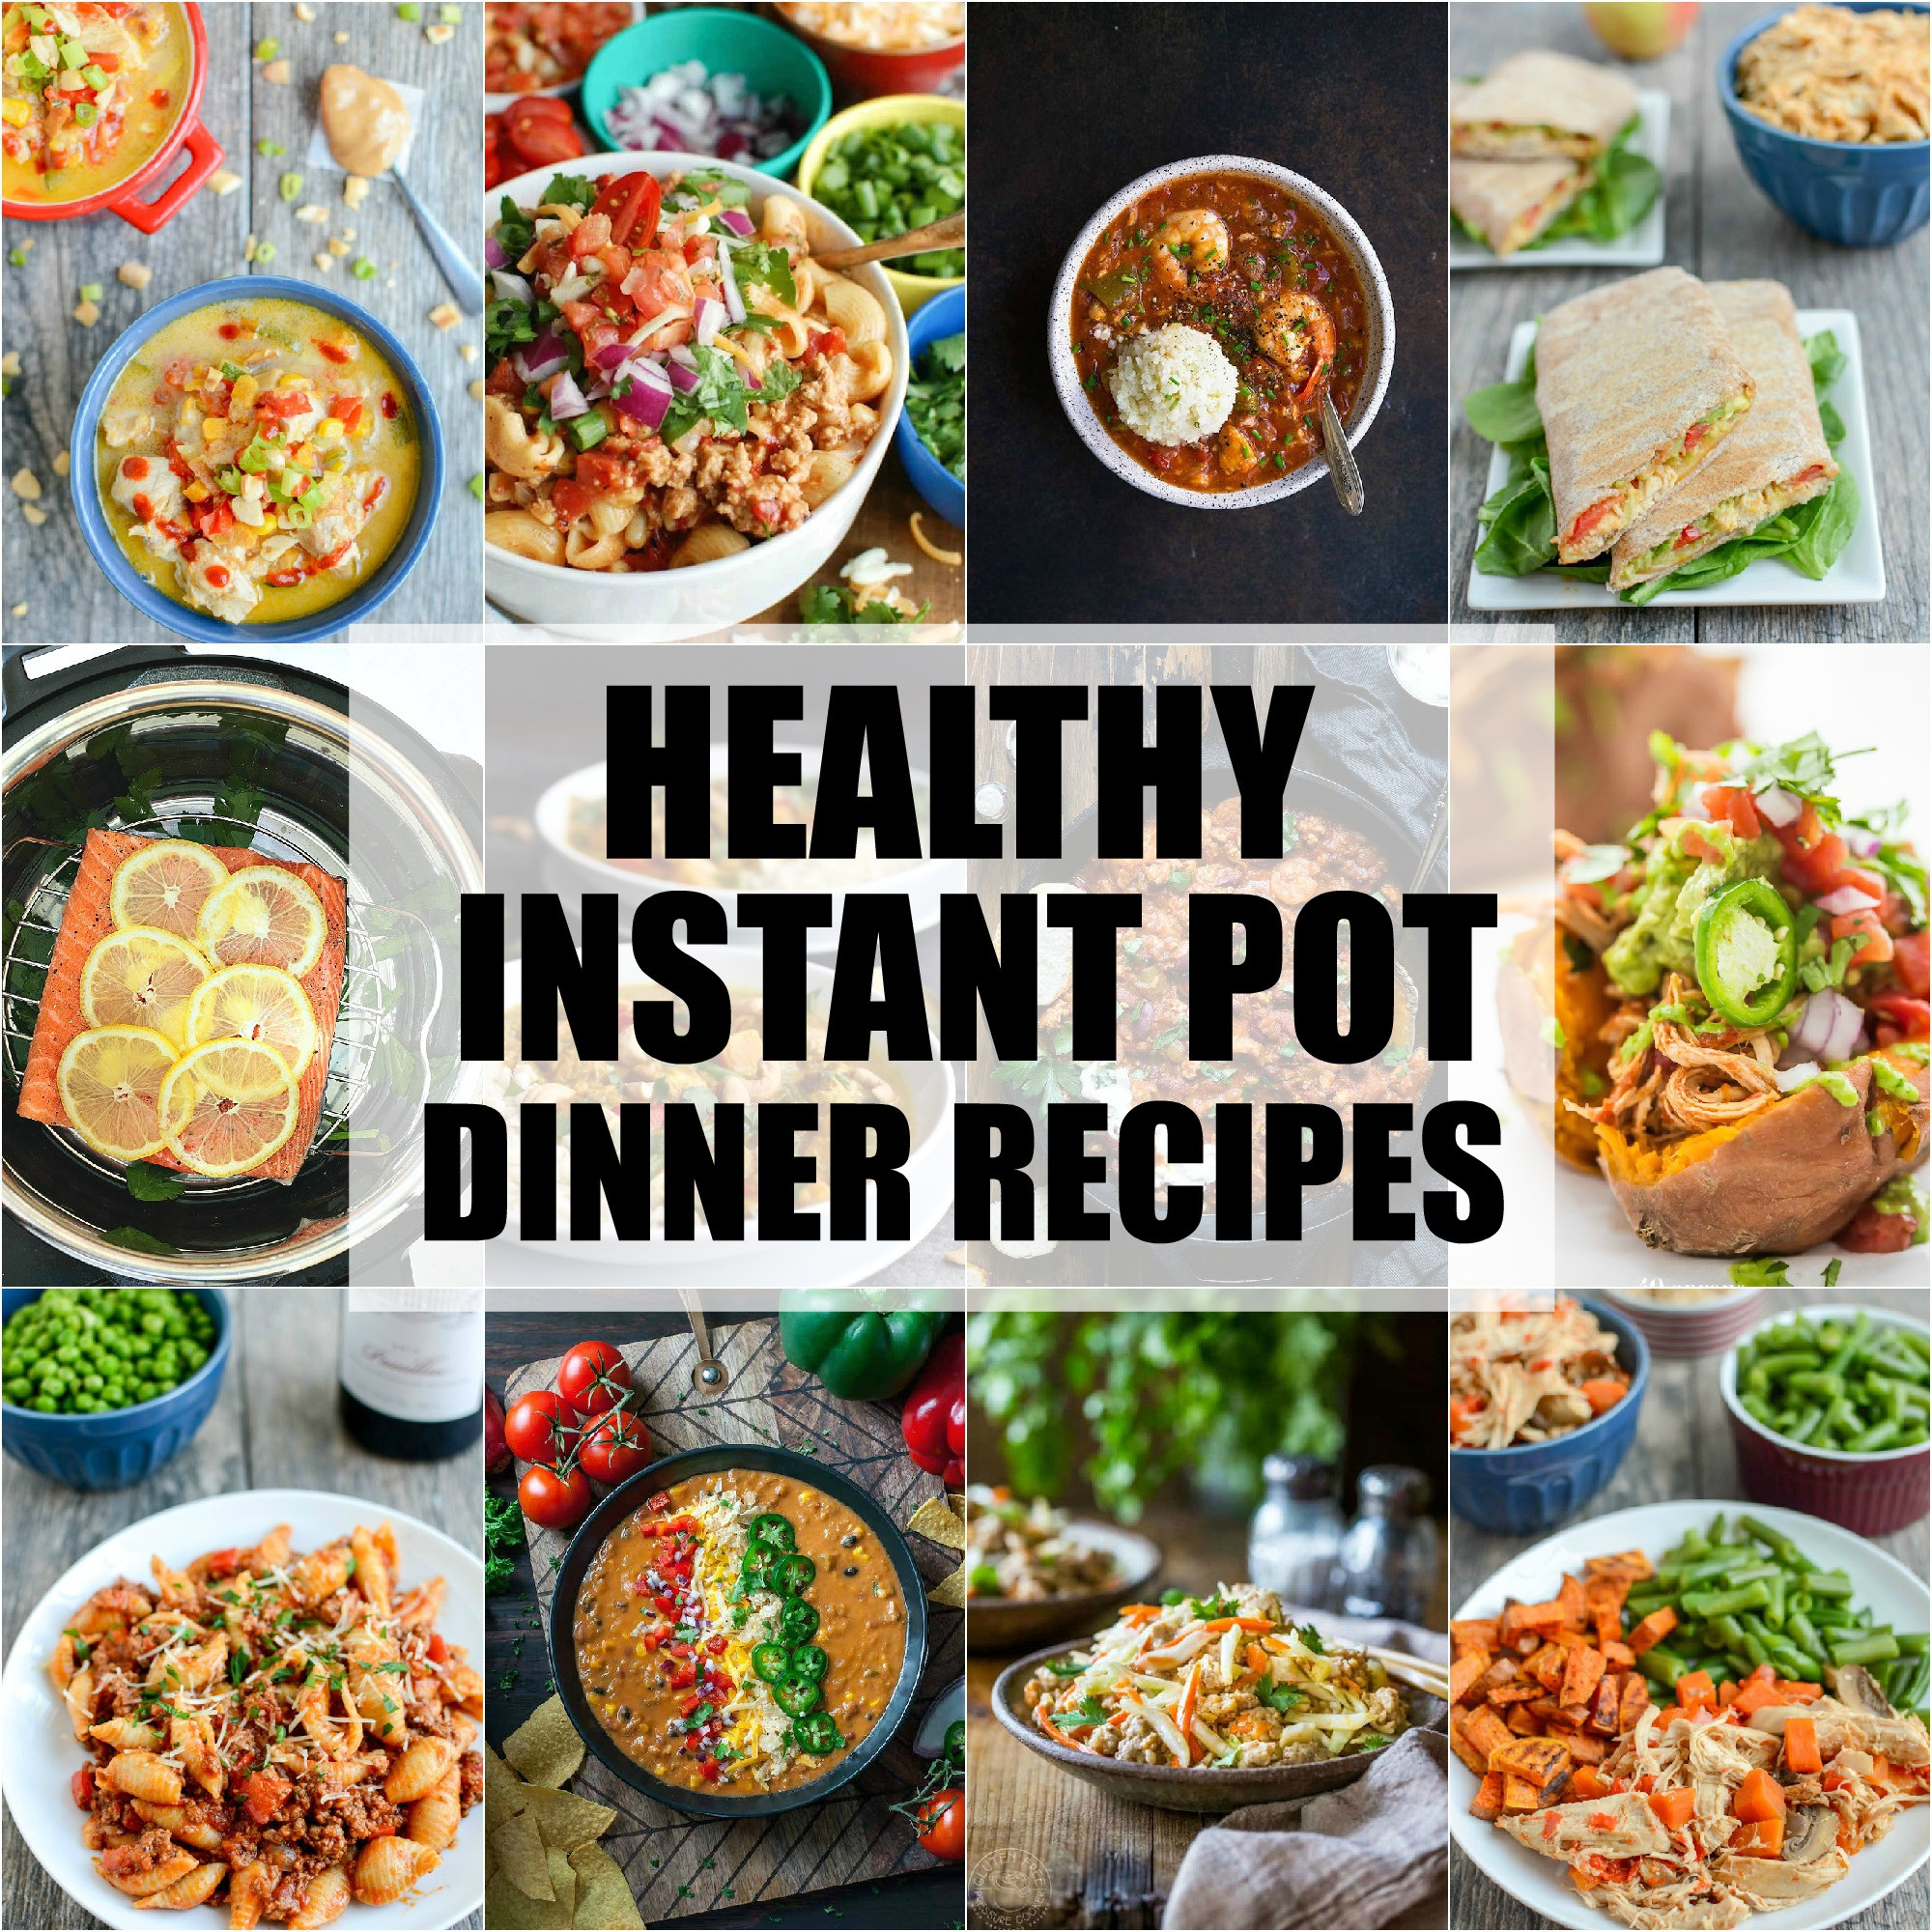 Instant Pot Brunch Recipes
 Healthy Instant Pot Dinner Recipes